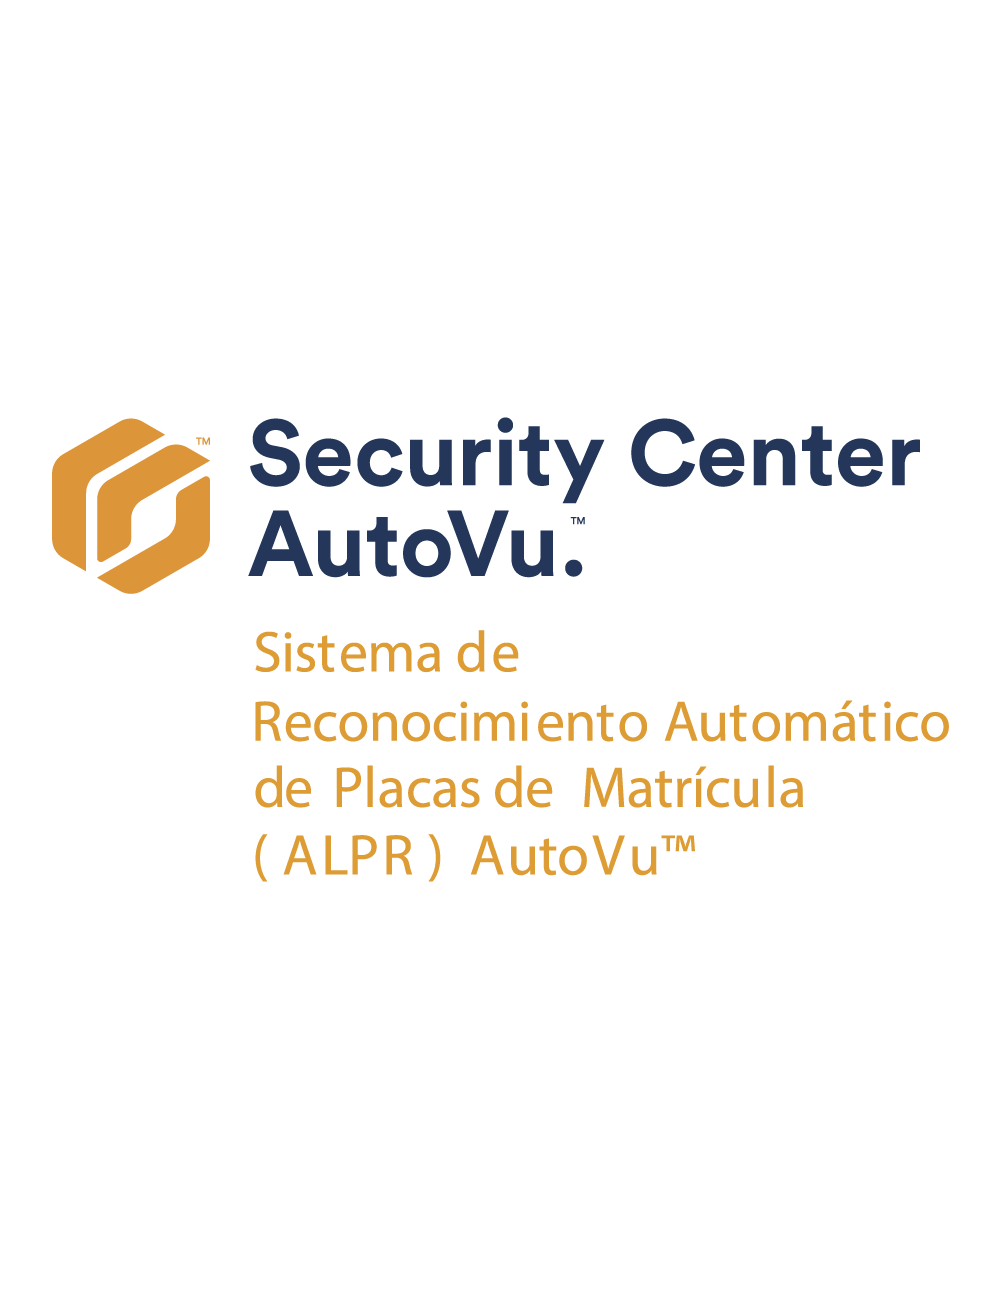 Security Center AutoVu.